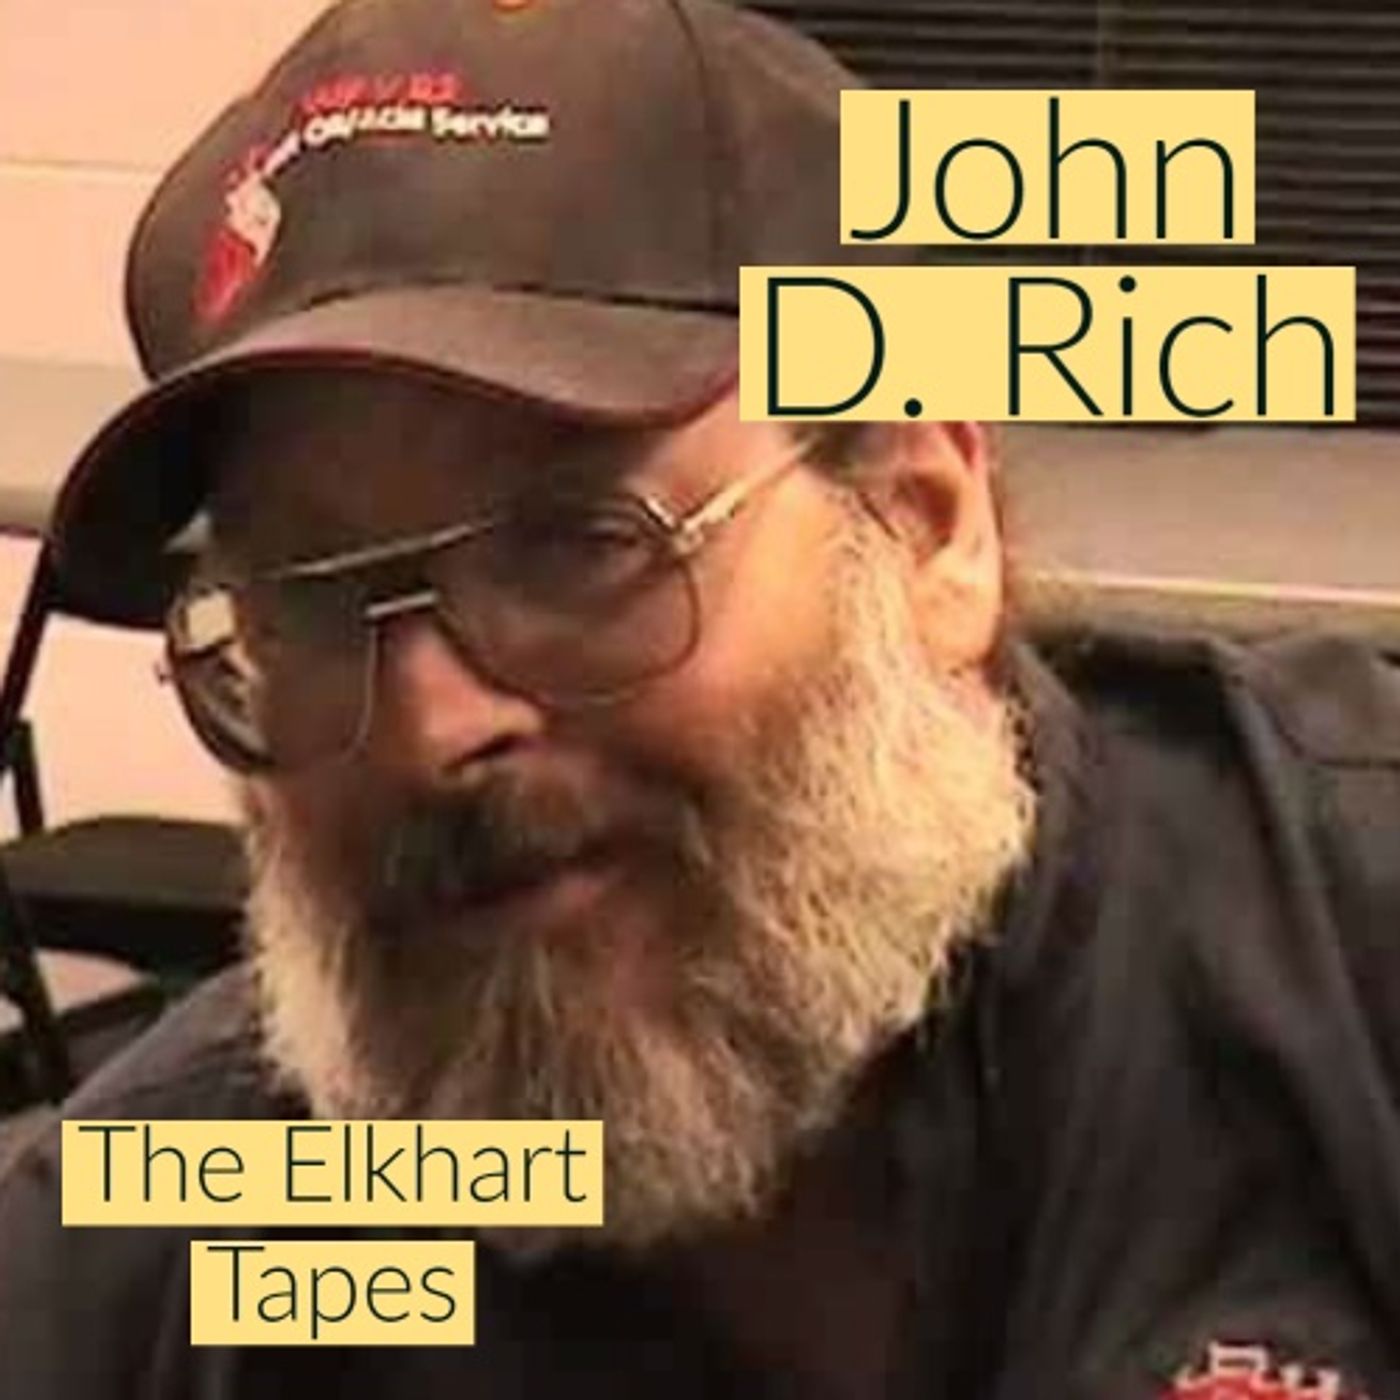 John D. Rich